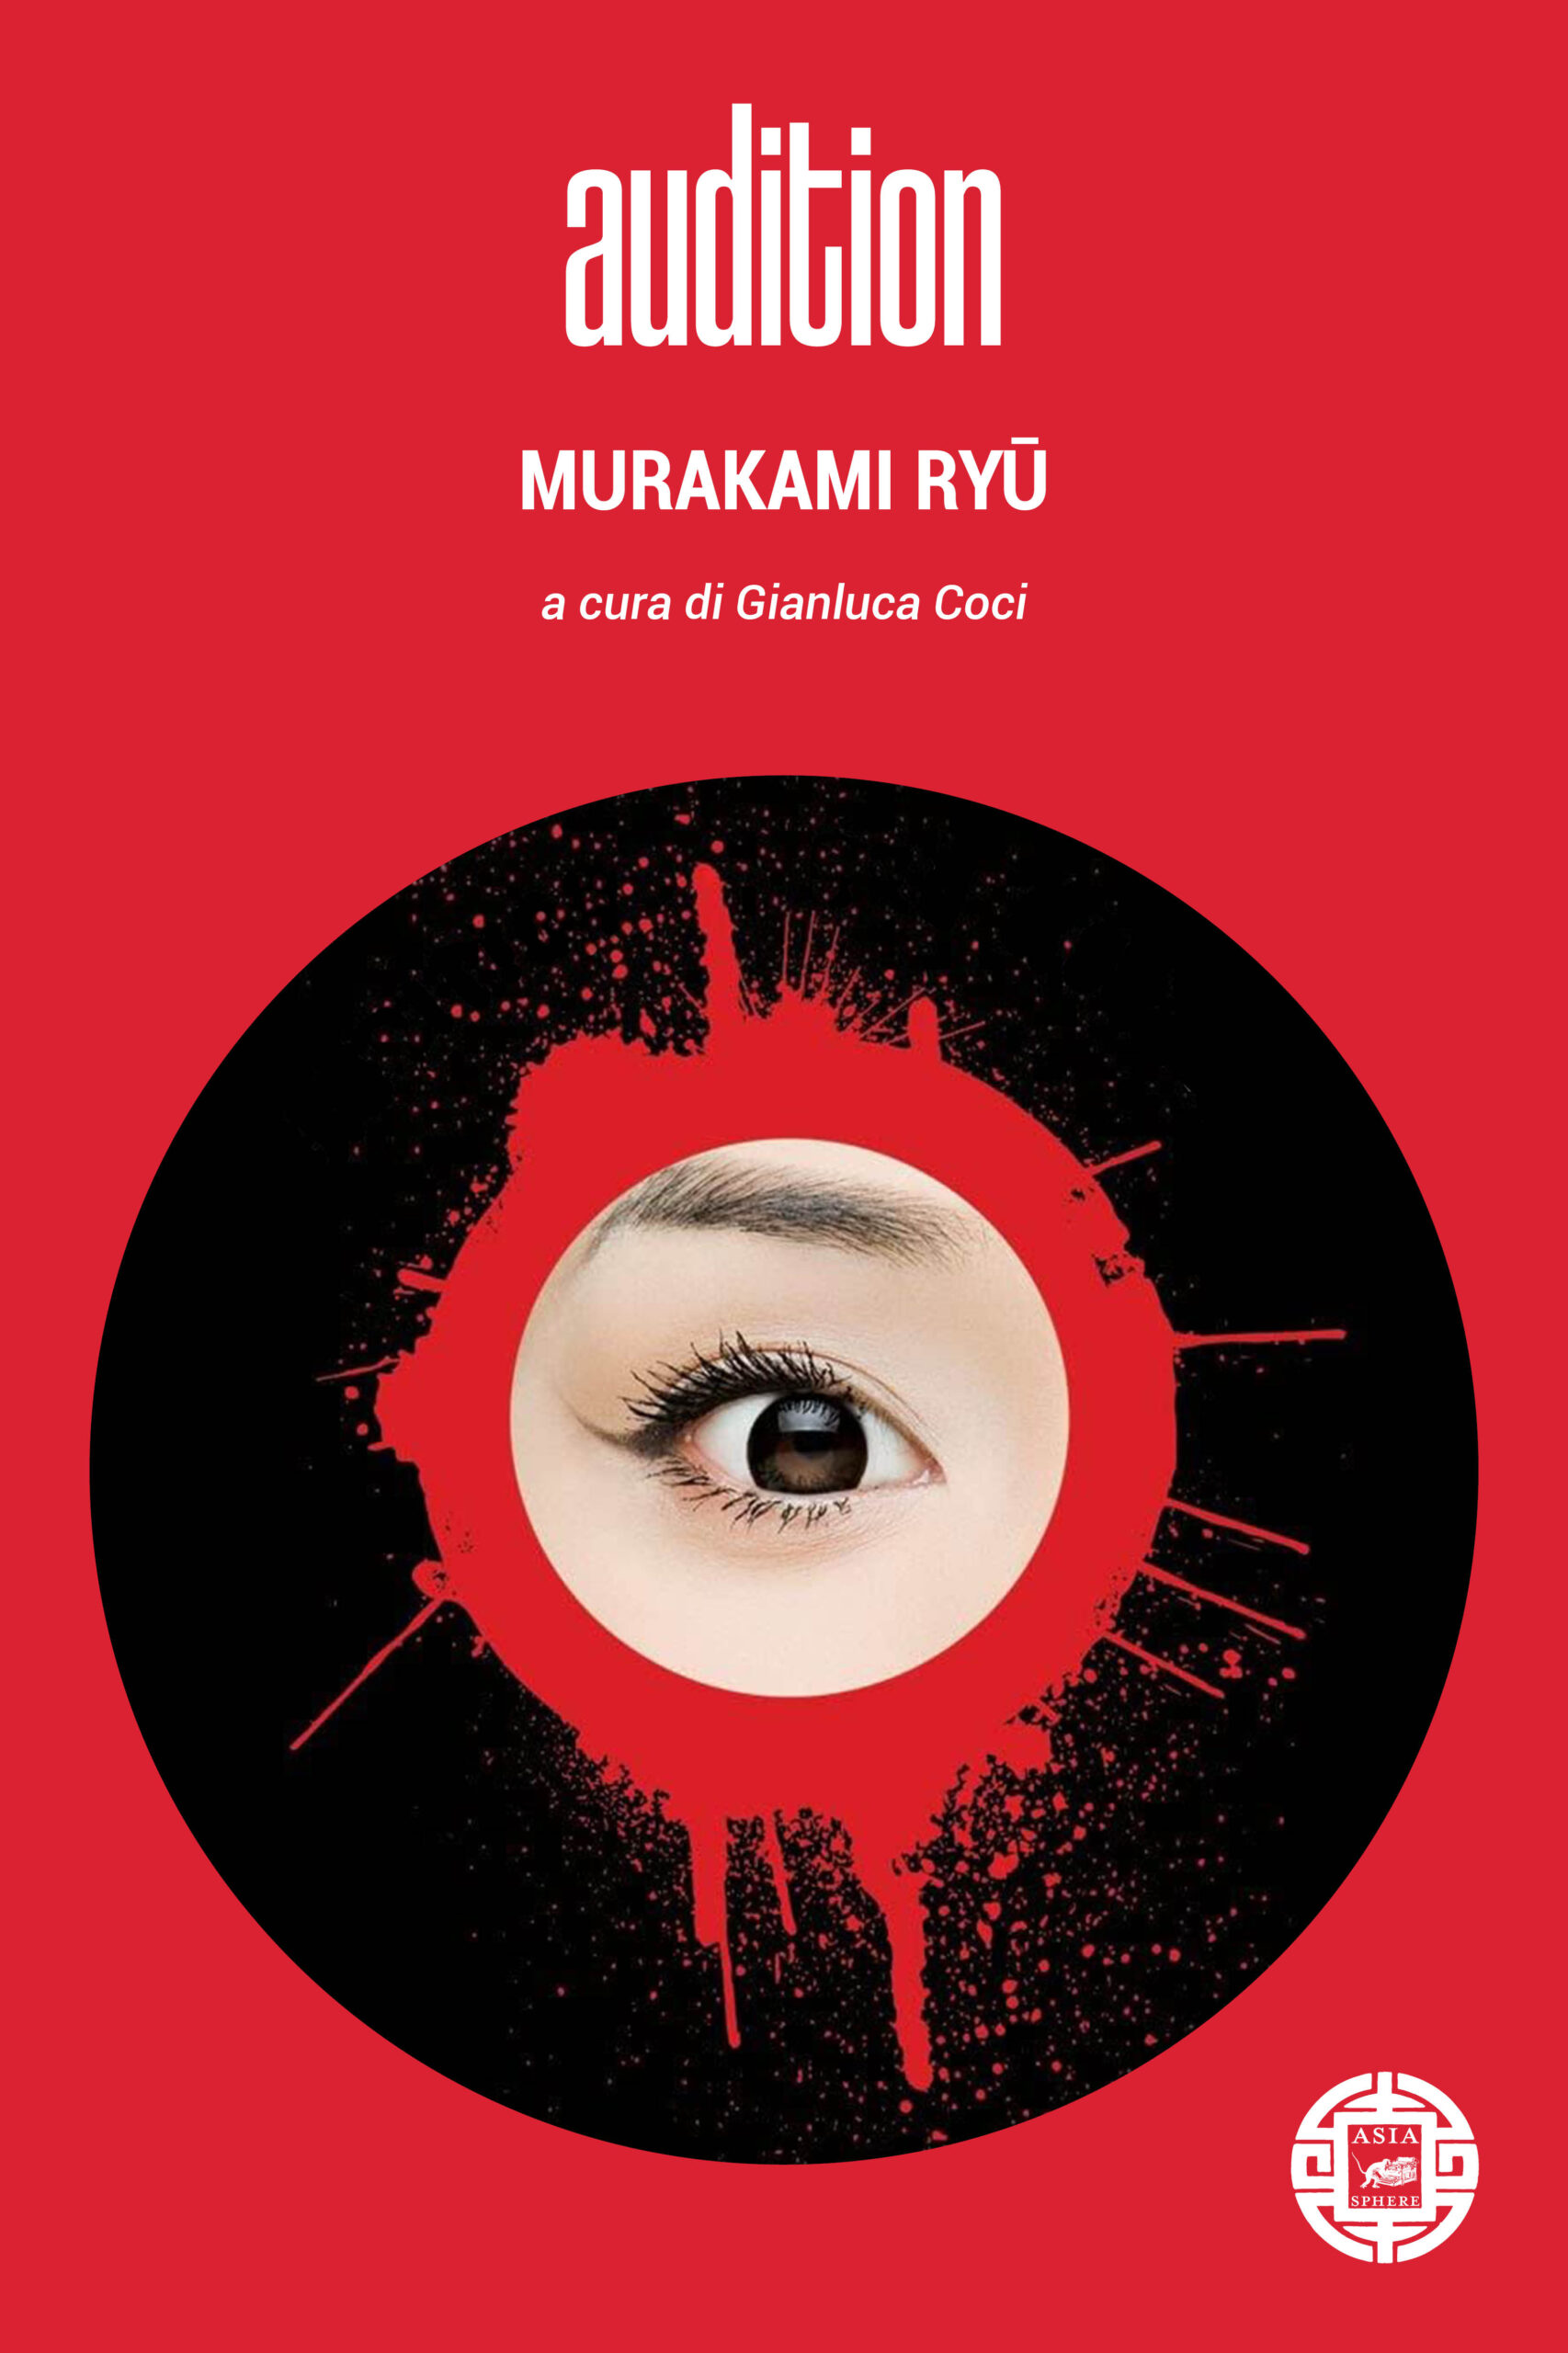 Haruki Murakami: Vento e Flipper. Esce l'inedito del famoso scrittore  tradotto per la prima volta dal giapponese - Libri - Dossier Cultura HD